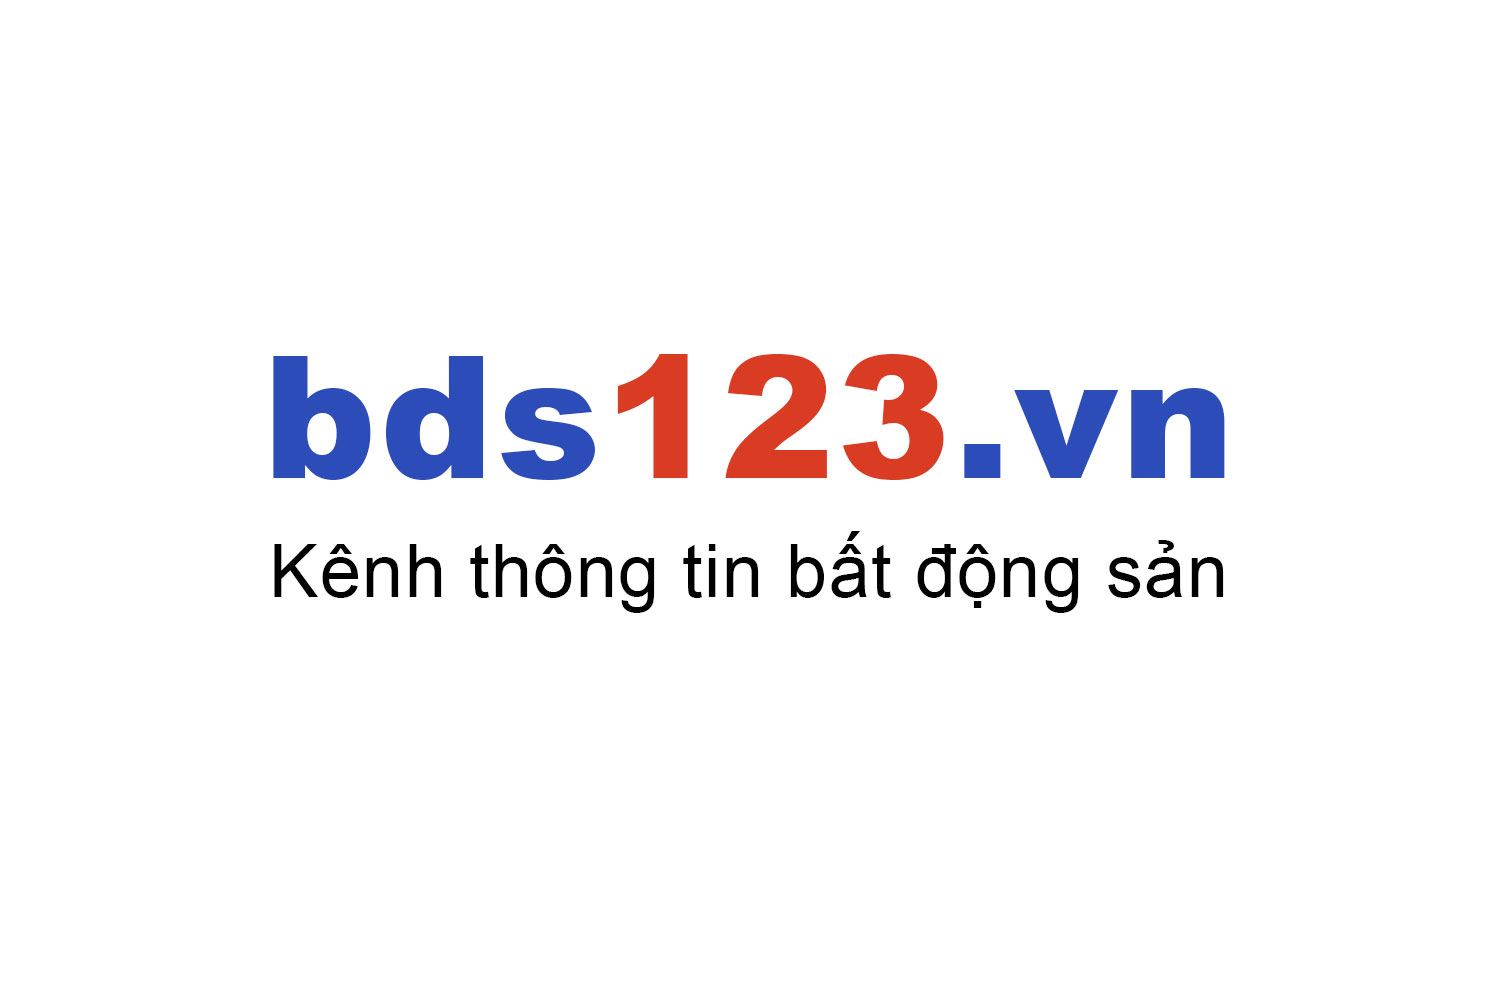 Mua bán căn hộ Sunshine City Sài Gòn ưu đãi giá tốt T10/2022 - Bds123.vn